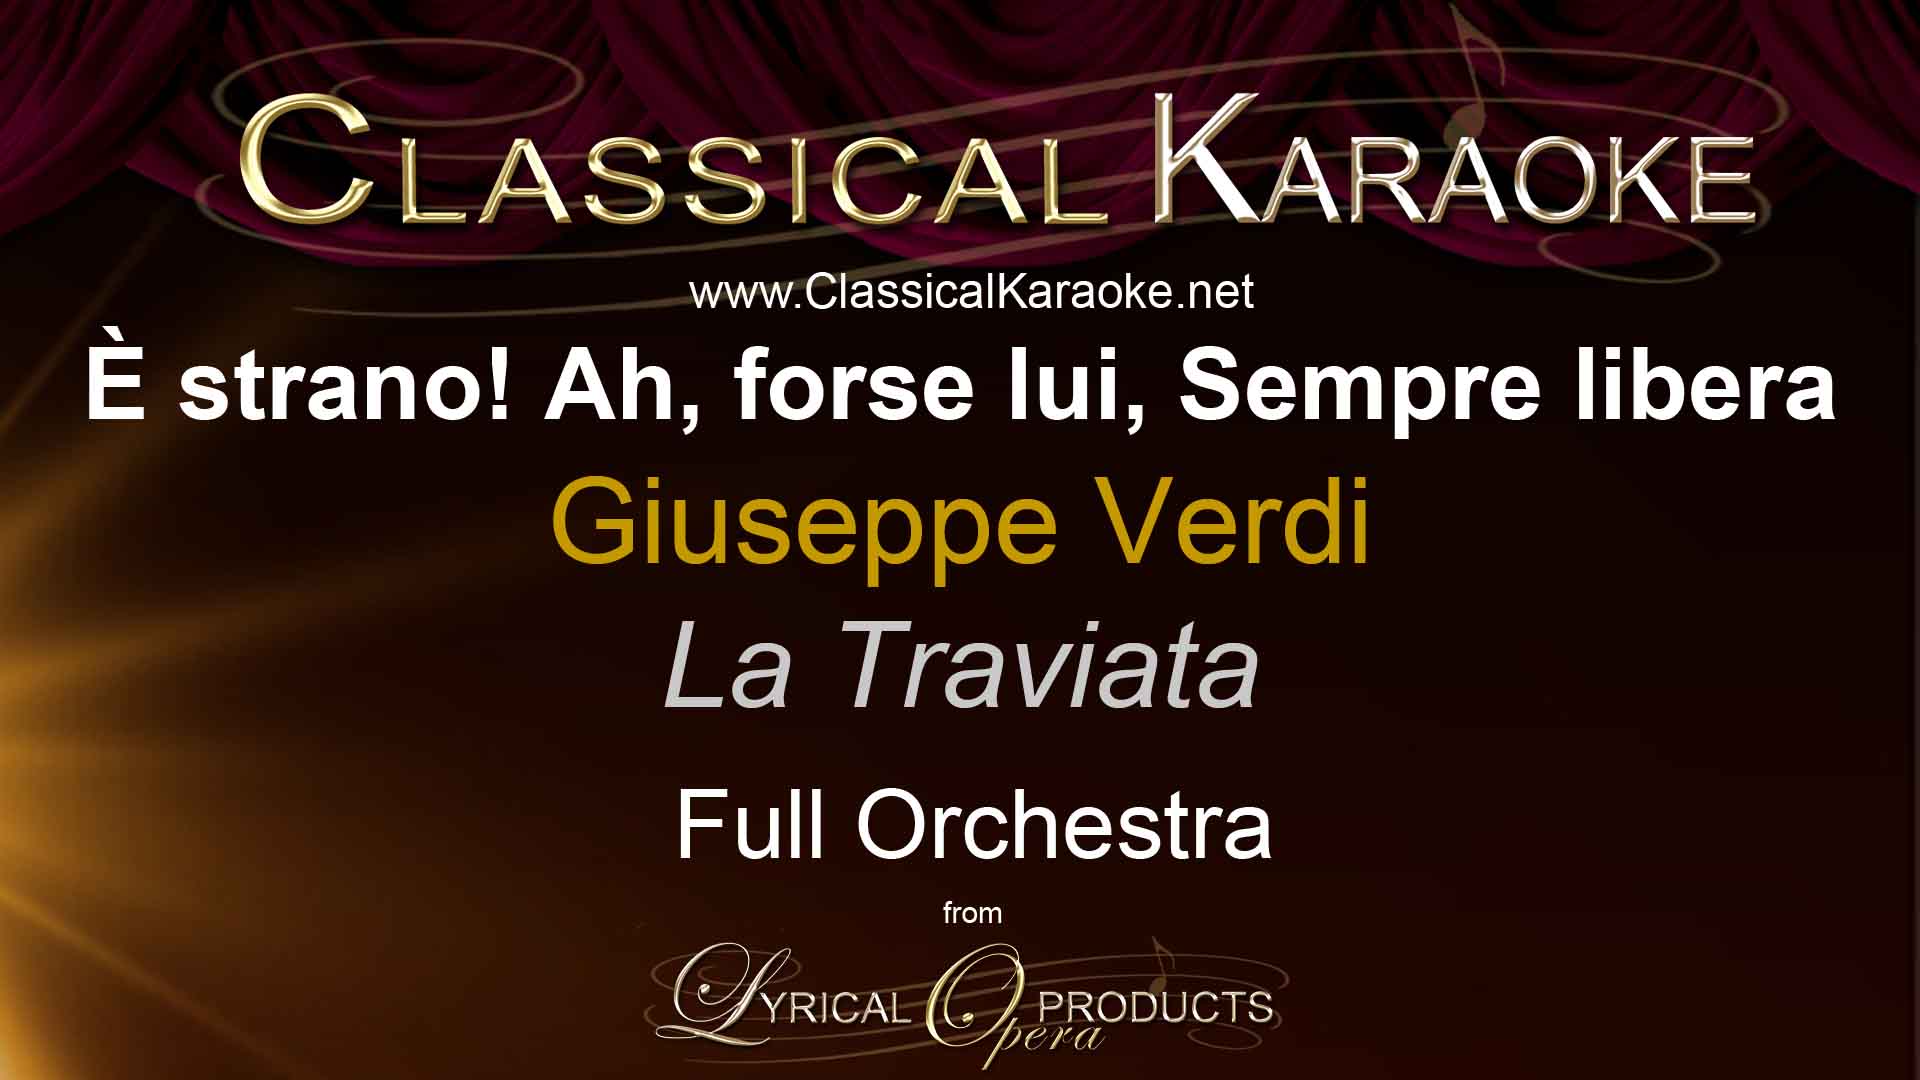 È strano! Ah, forse lui, Sempre libera, from La Traviata, by Verdi, Full Orchestral Accompaniment (karaoke) track